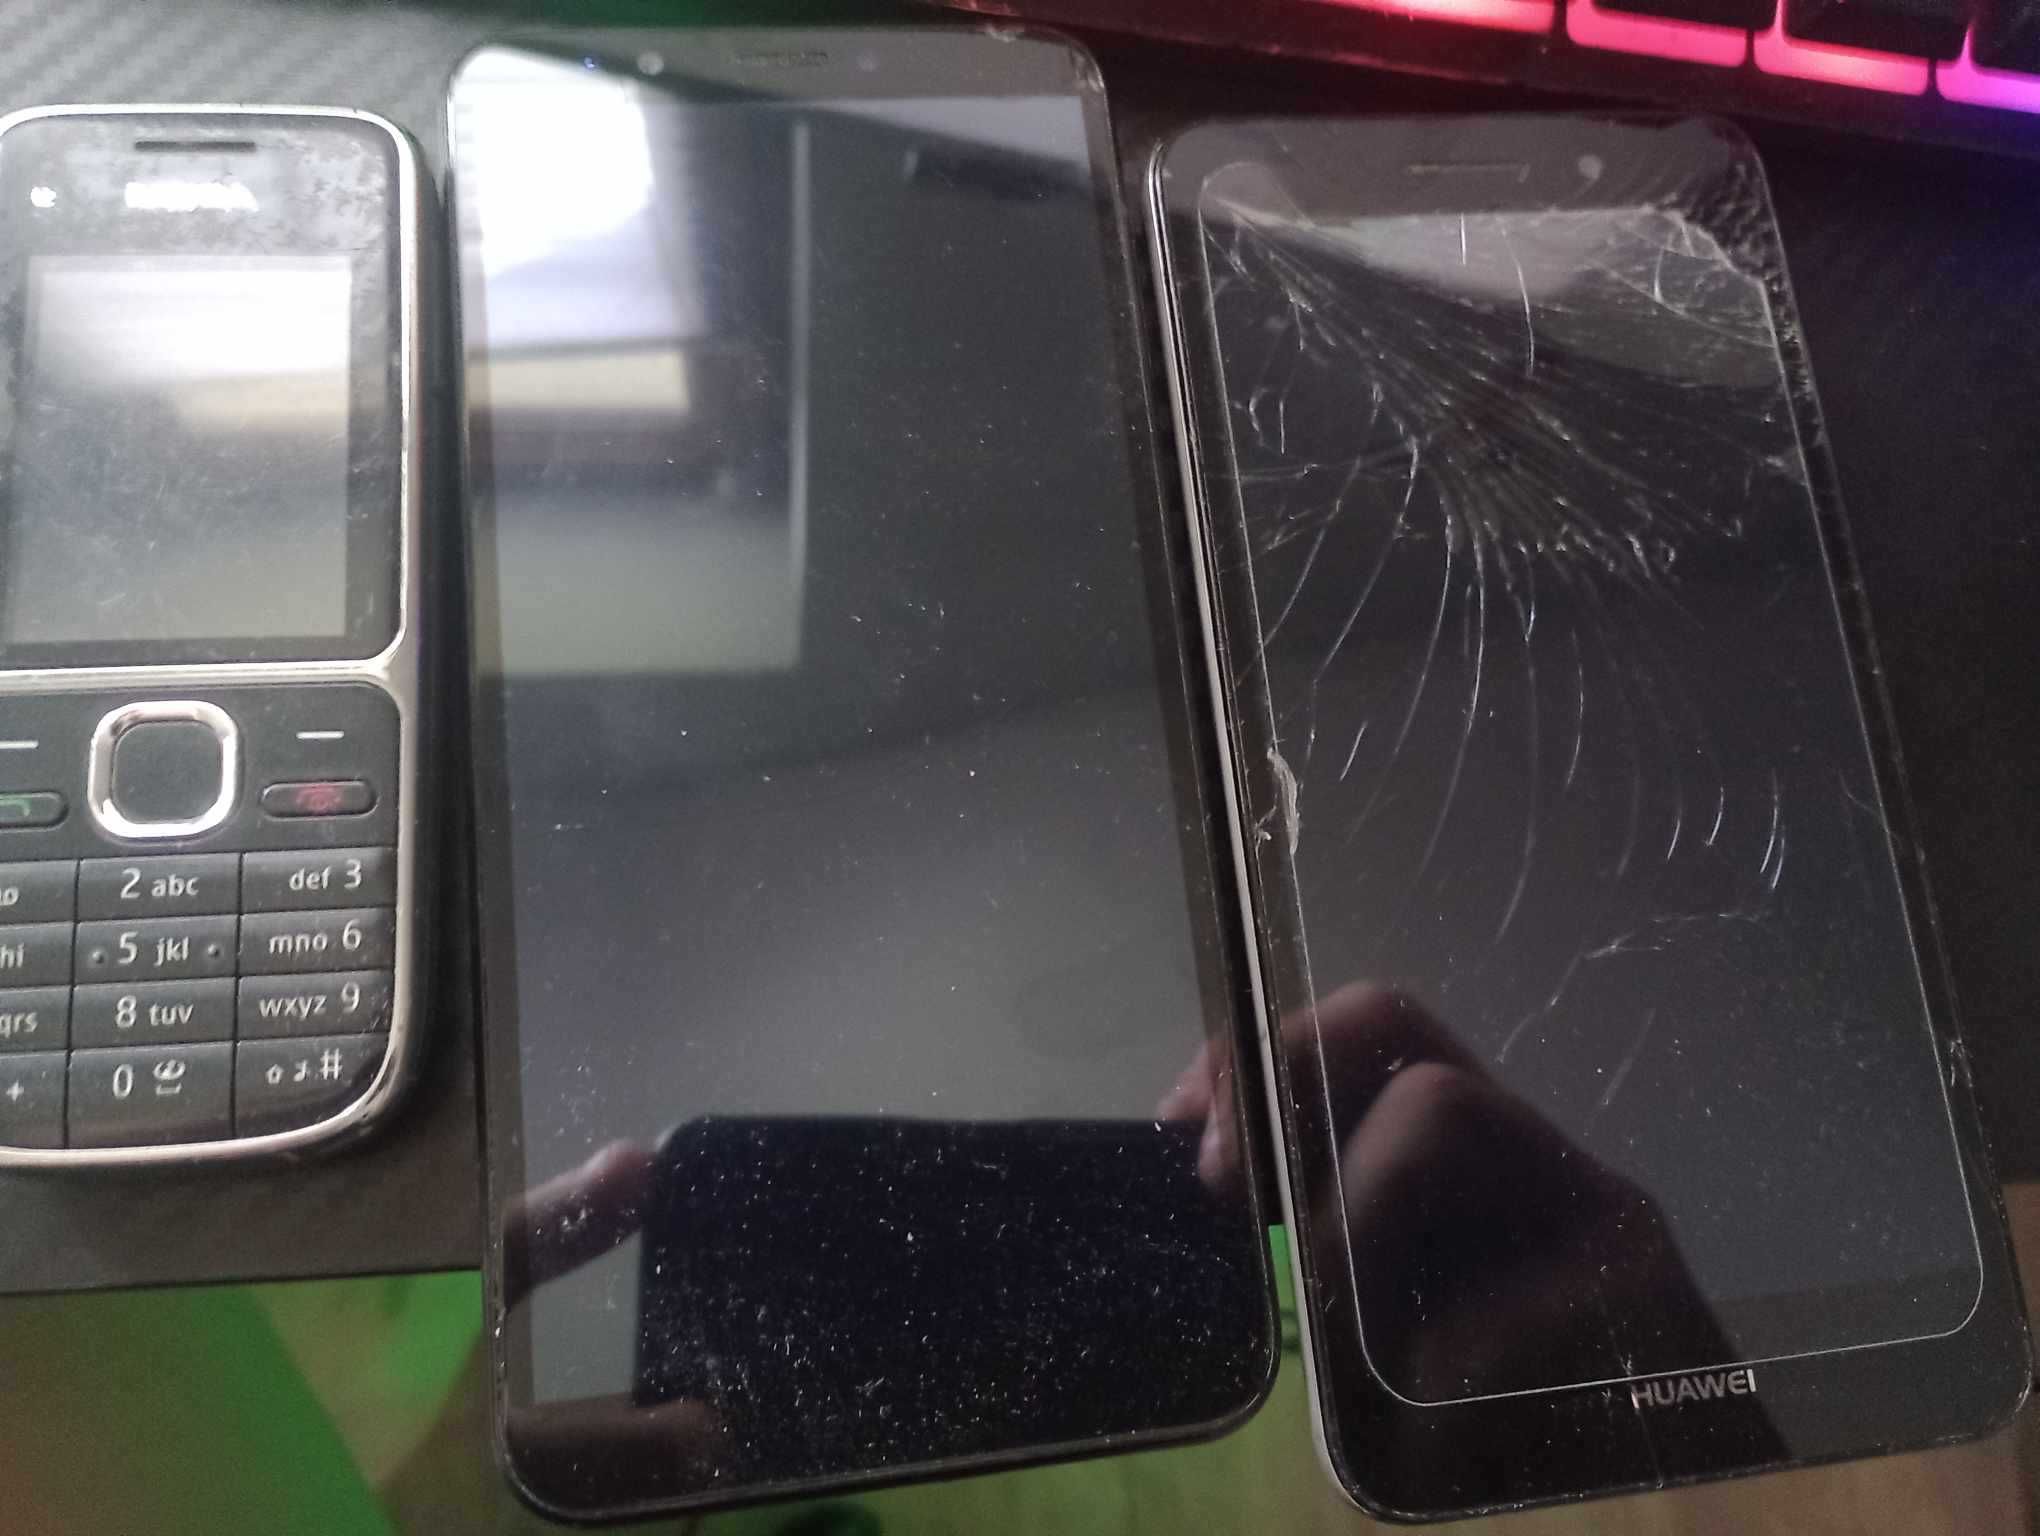 3 zepsuty telefony obydwa marki HUAWEWI i jeden na klawiature nokia